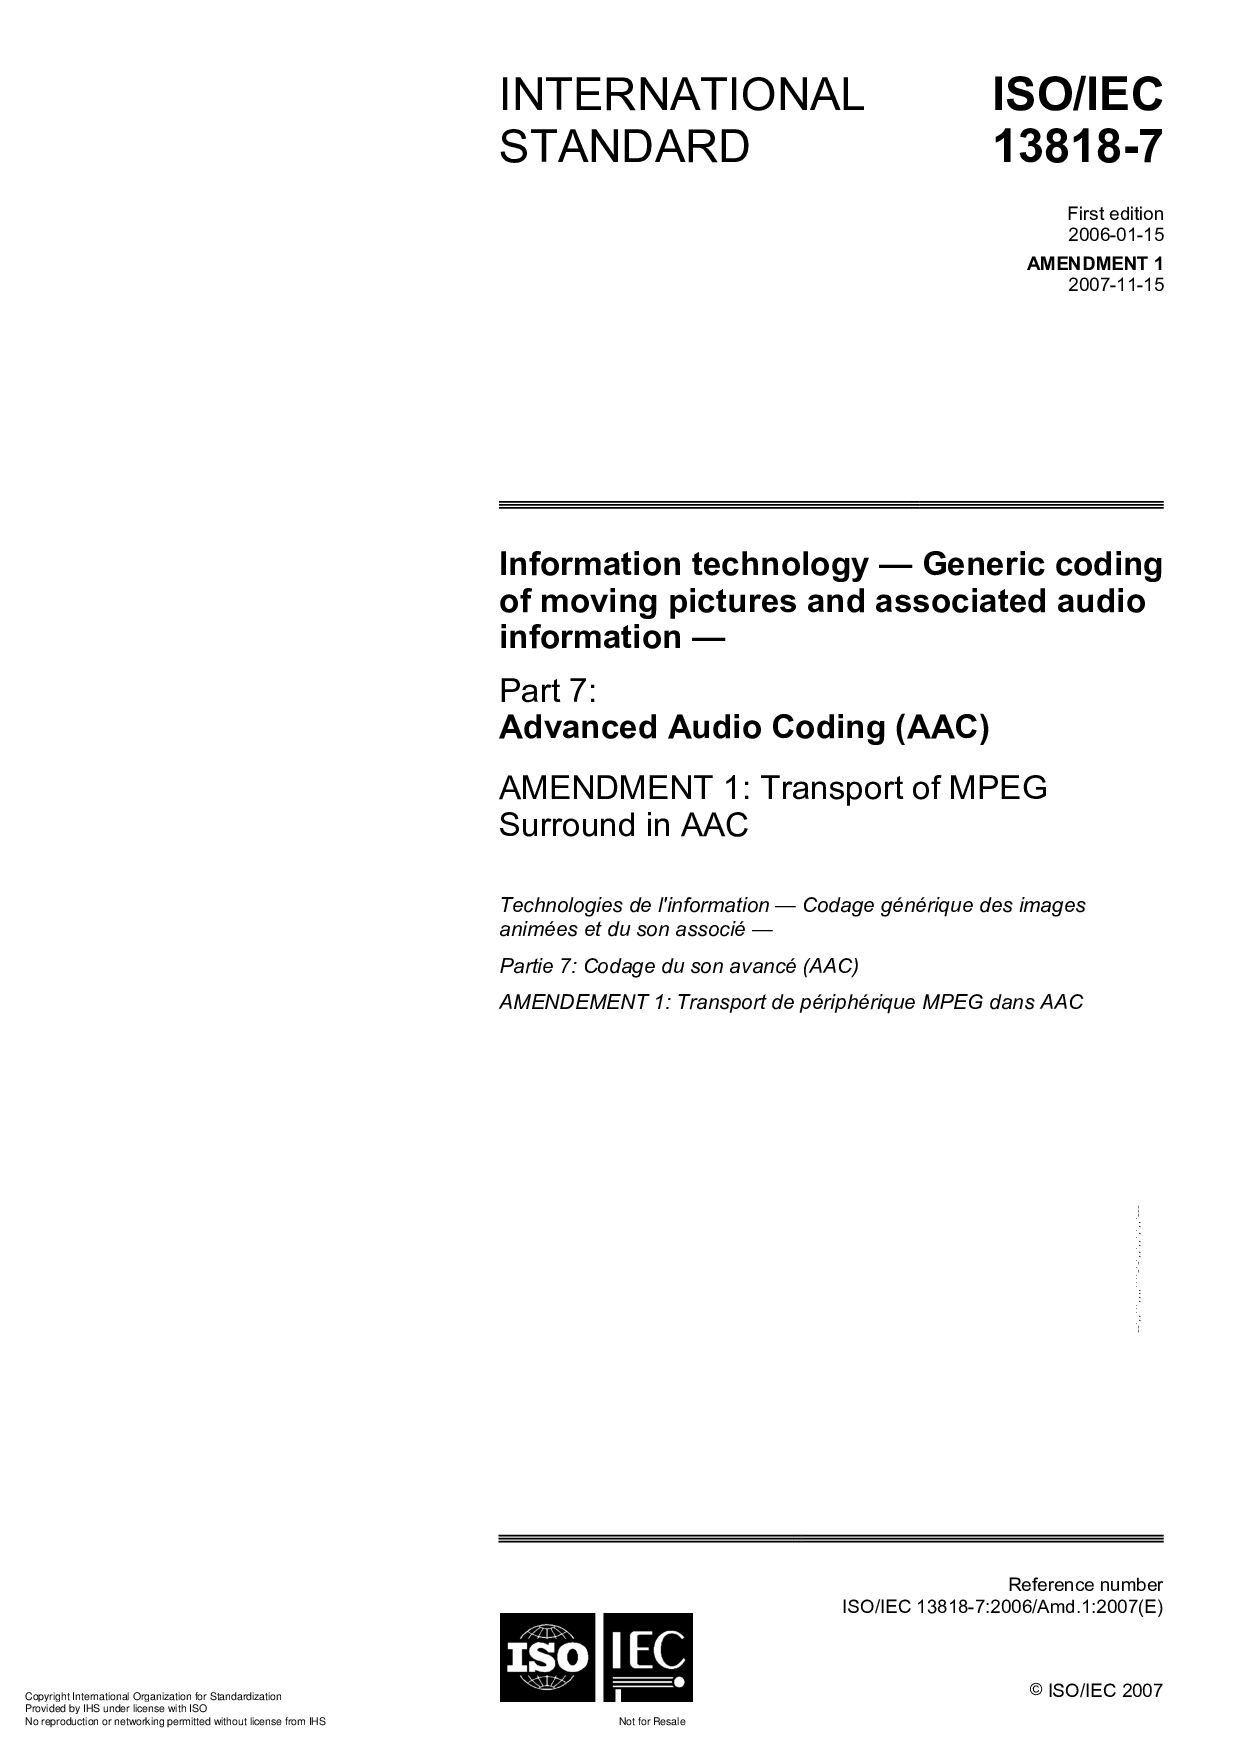 ISO/IEC 13818-7:2006/Amd 1:2007